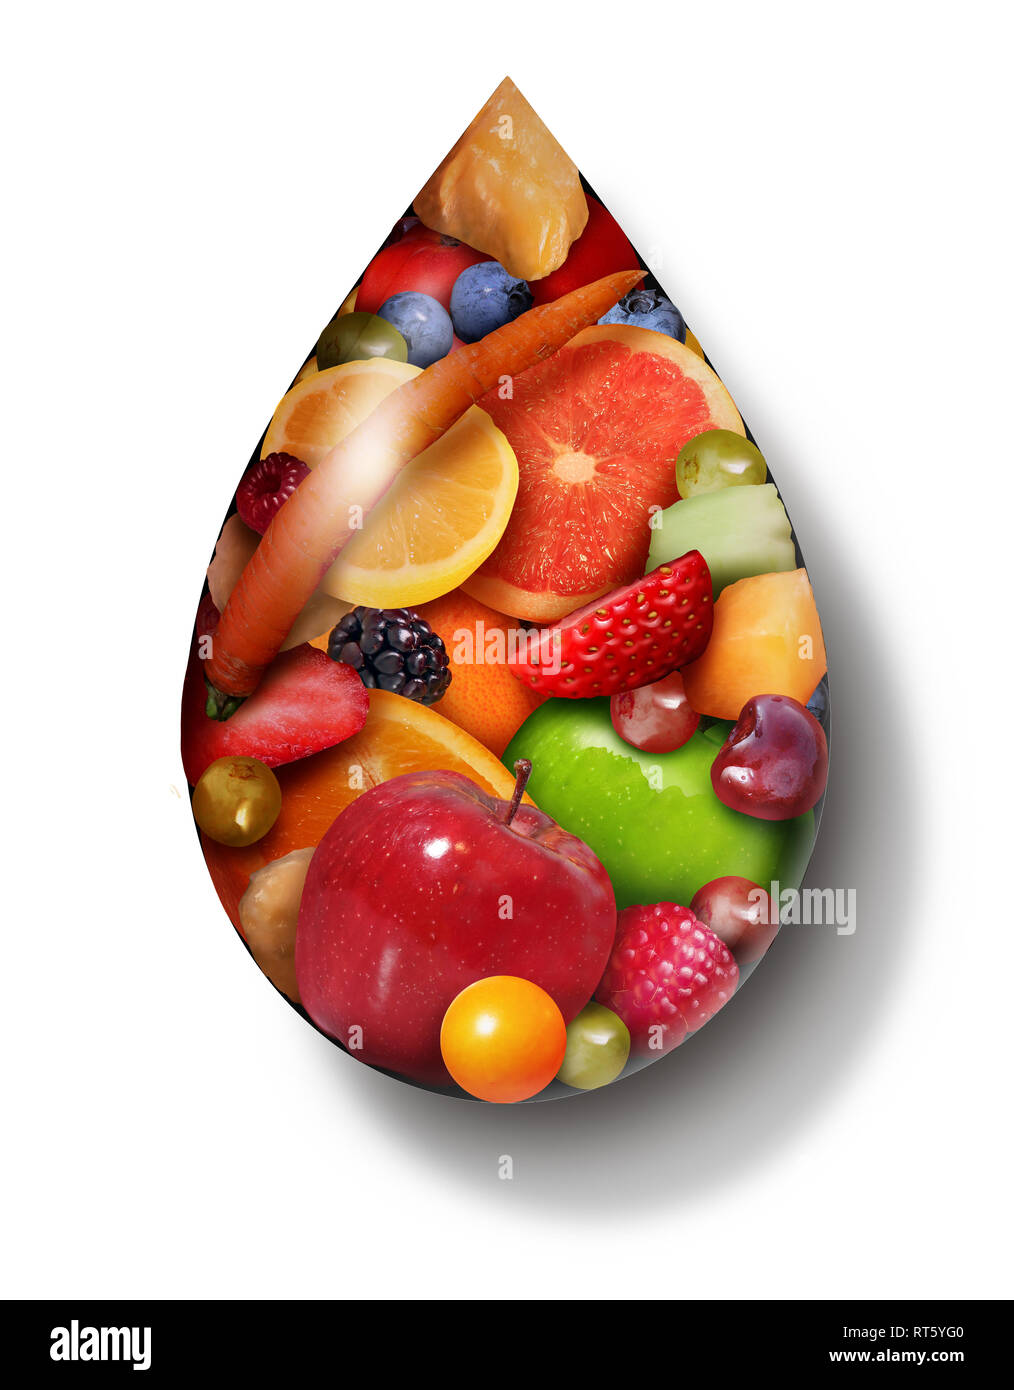 Fruchtsaft Tropfen, wie Organische natürliche Süße Produkte als Symbol für eine Kur zu trinken oder Gesundes Essen Ernährung Getränke in einer 3D-Darstellung. Stockfoto